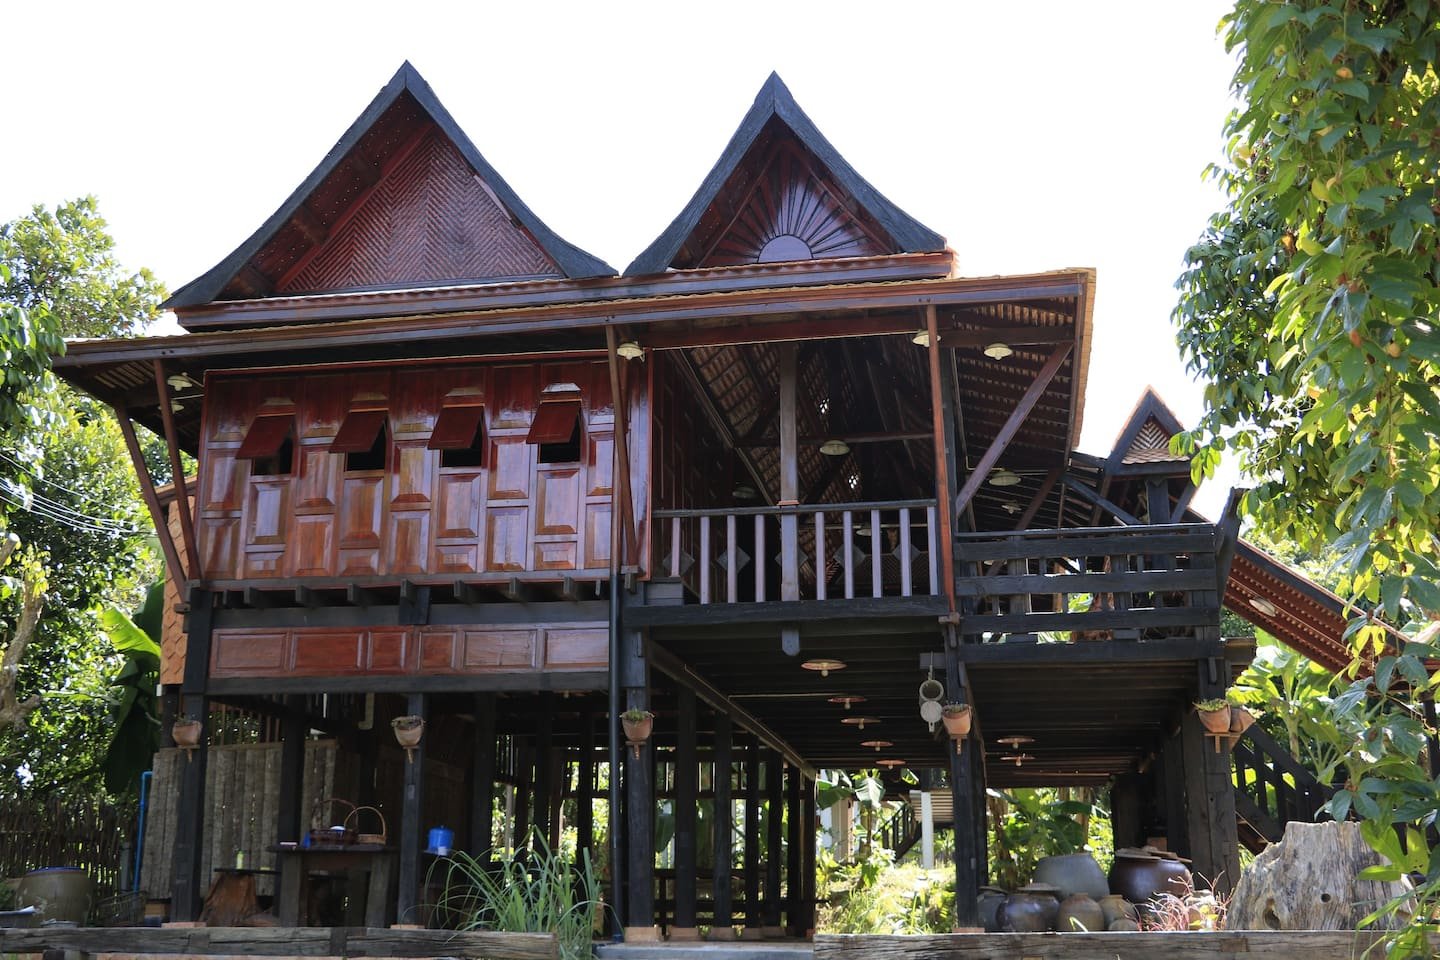 บ้านไม้ยกพื้นสูง แบบบ้านทรงไทยโบราณดั้งเดิม(ภาคใต้) ใช้วัสดุโบราณหายาก